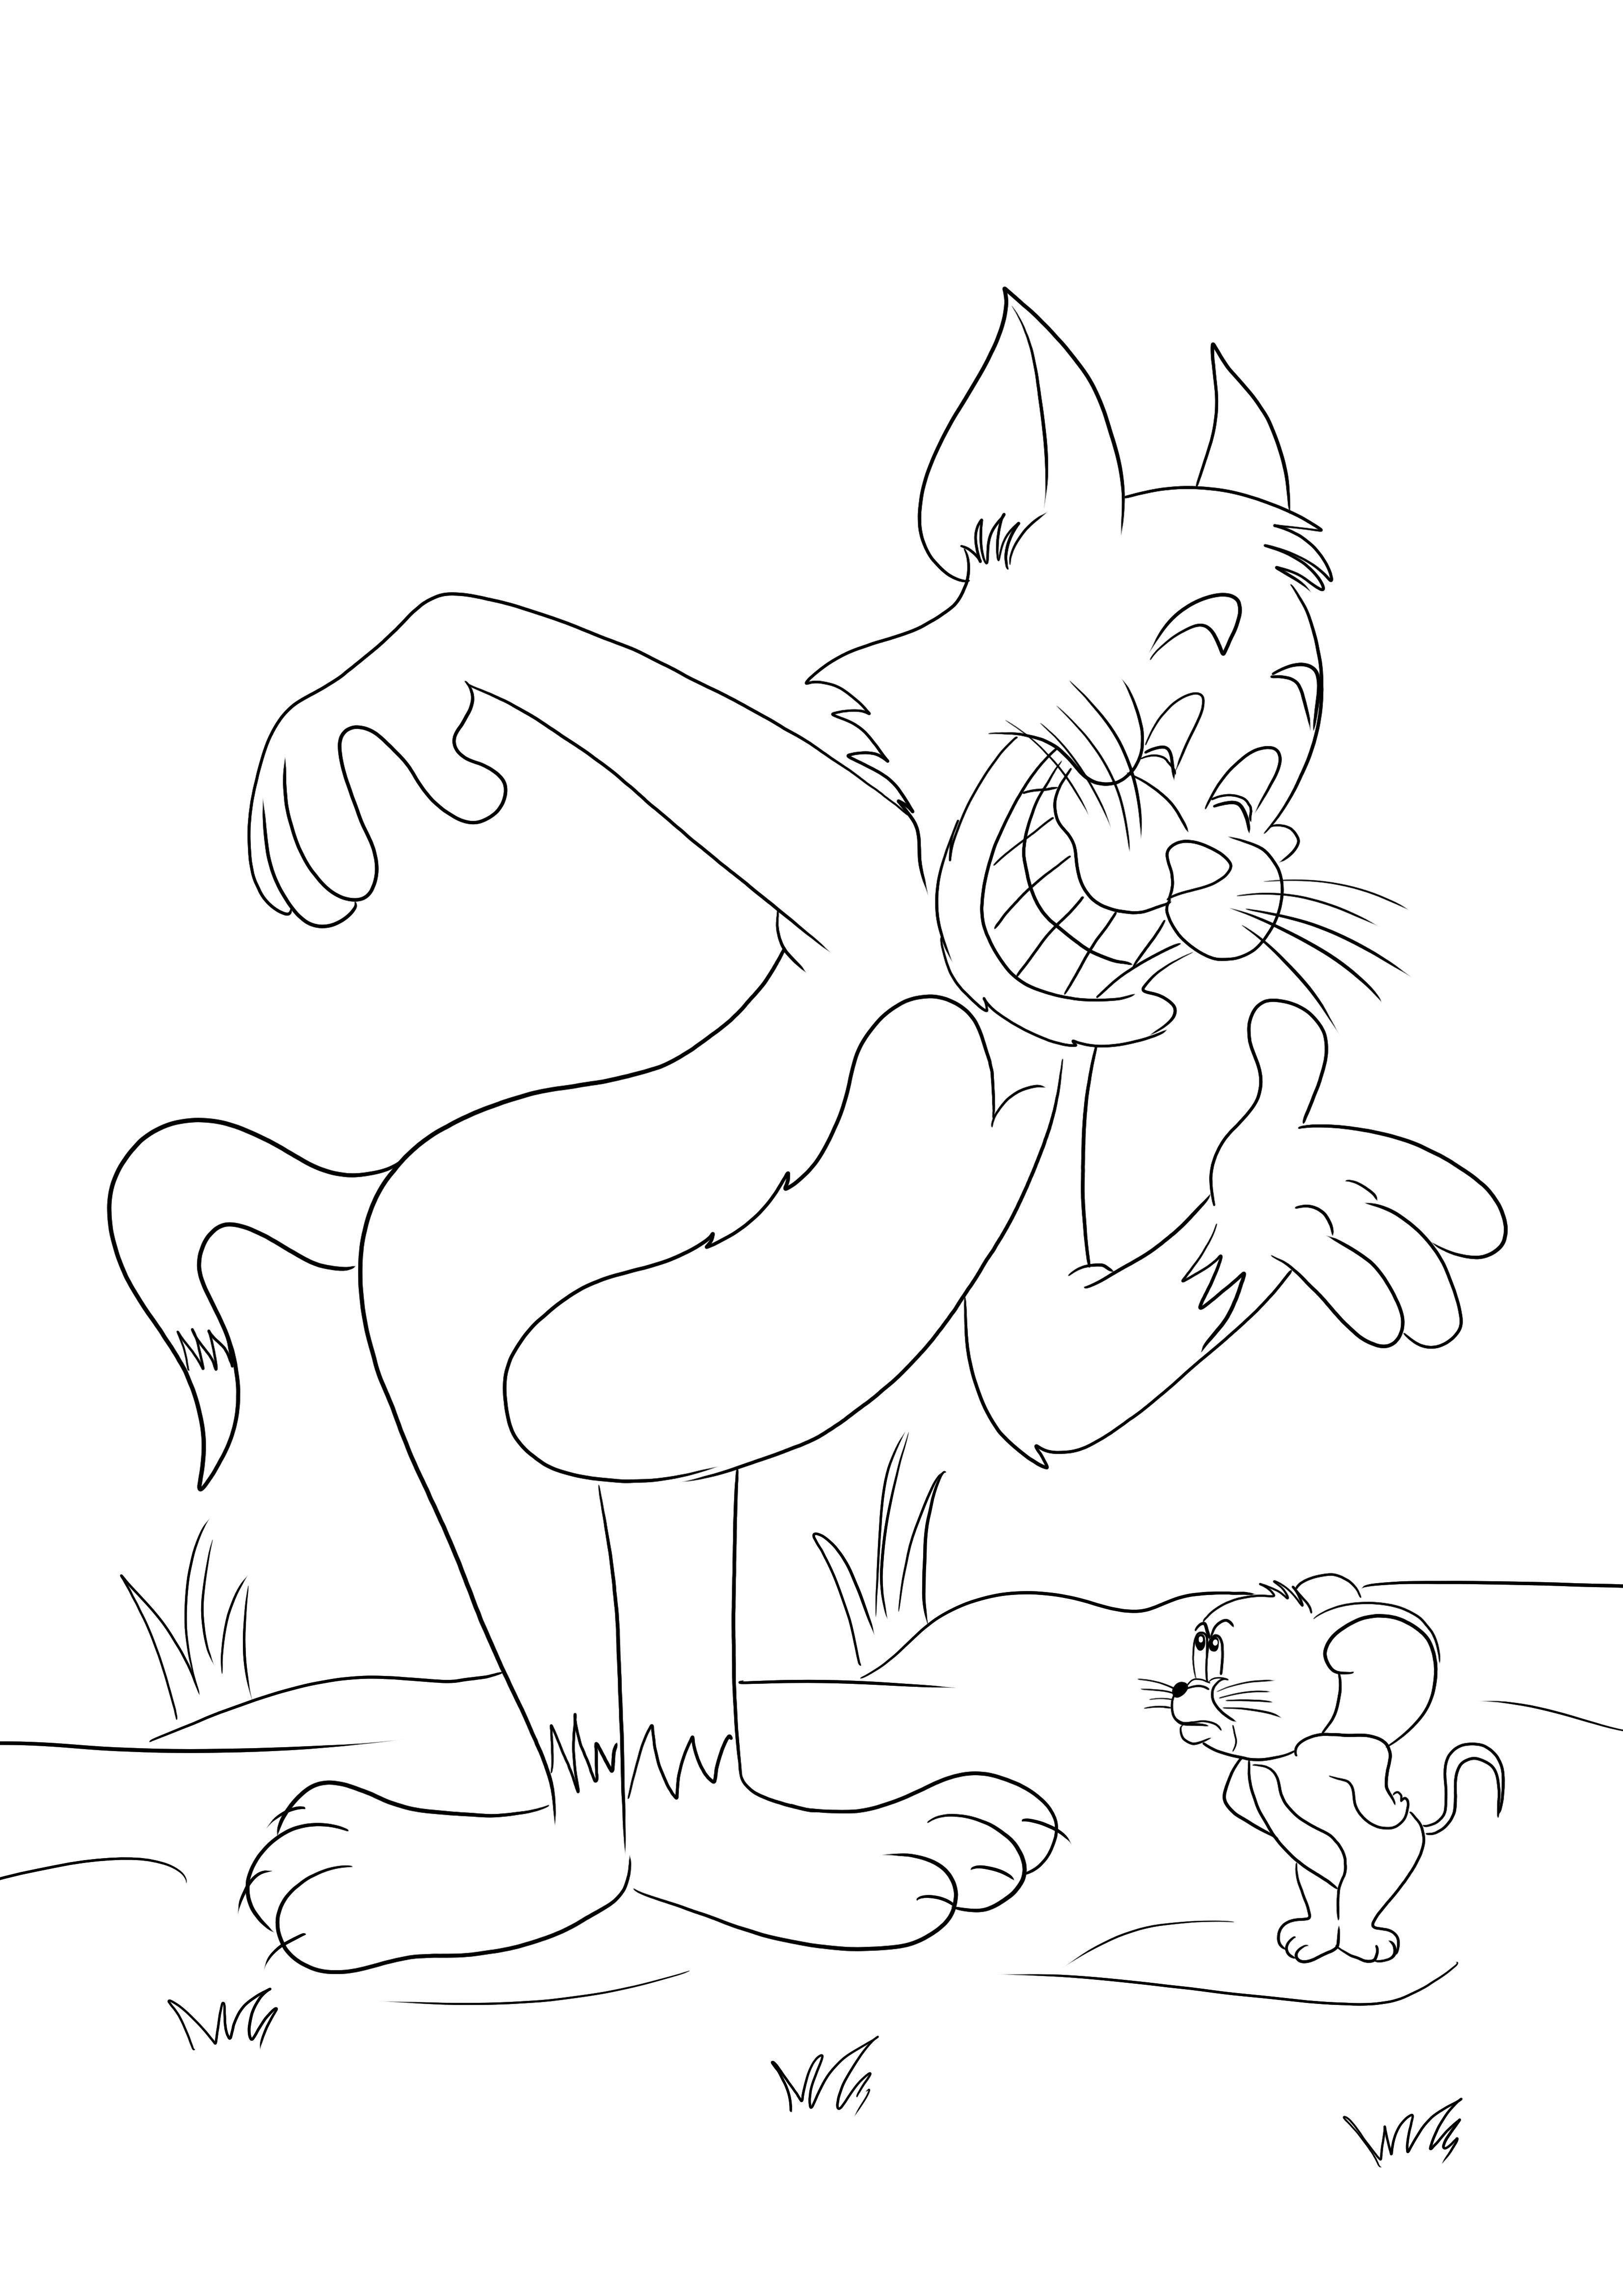 Imprimible gratis de Tom y Jerry peleando de nuevo para colorear para niños facilmente